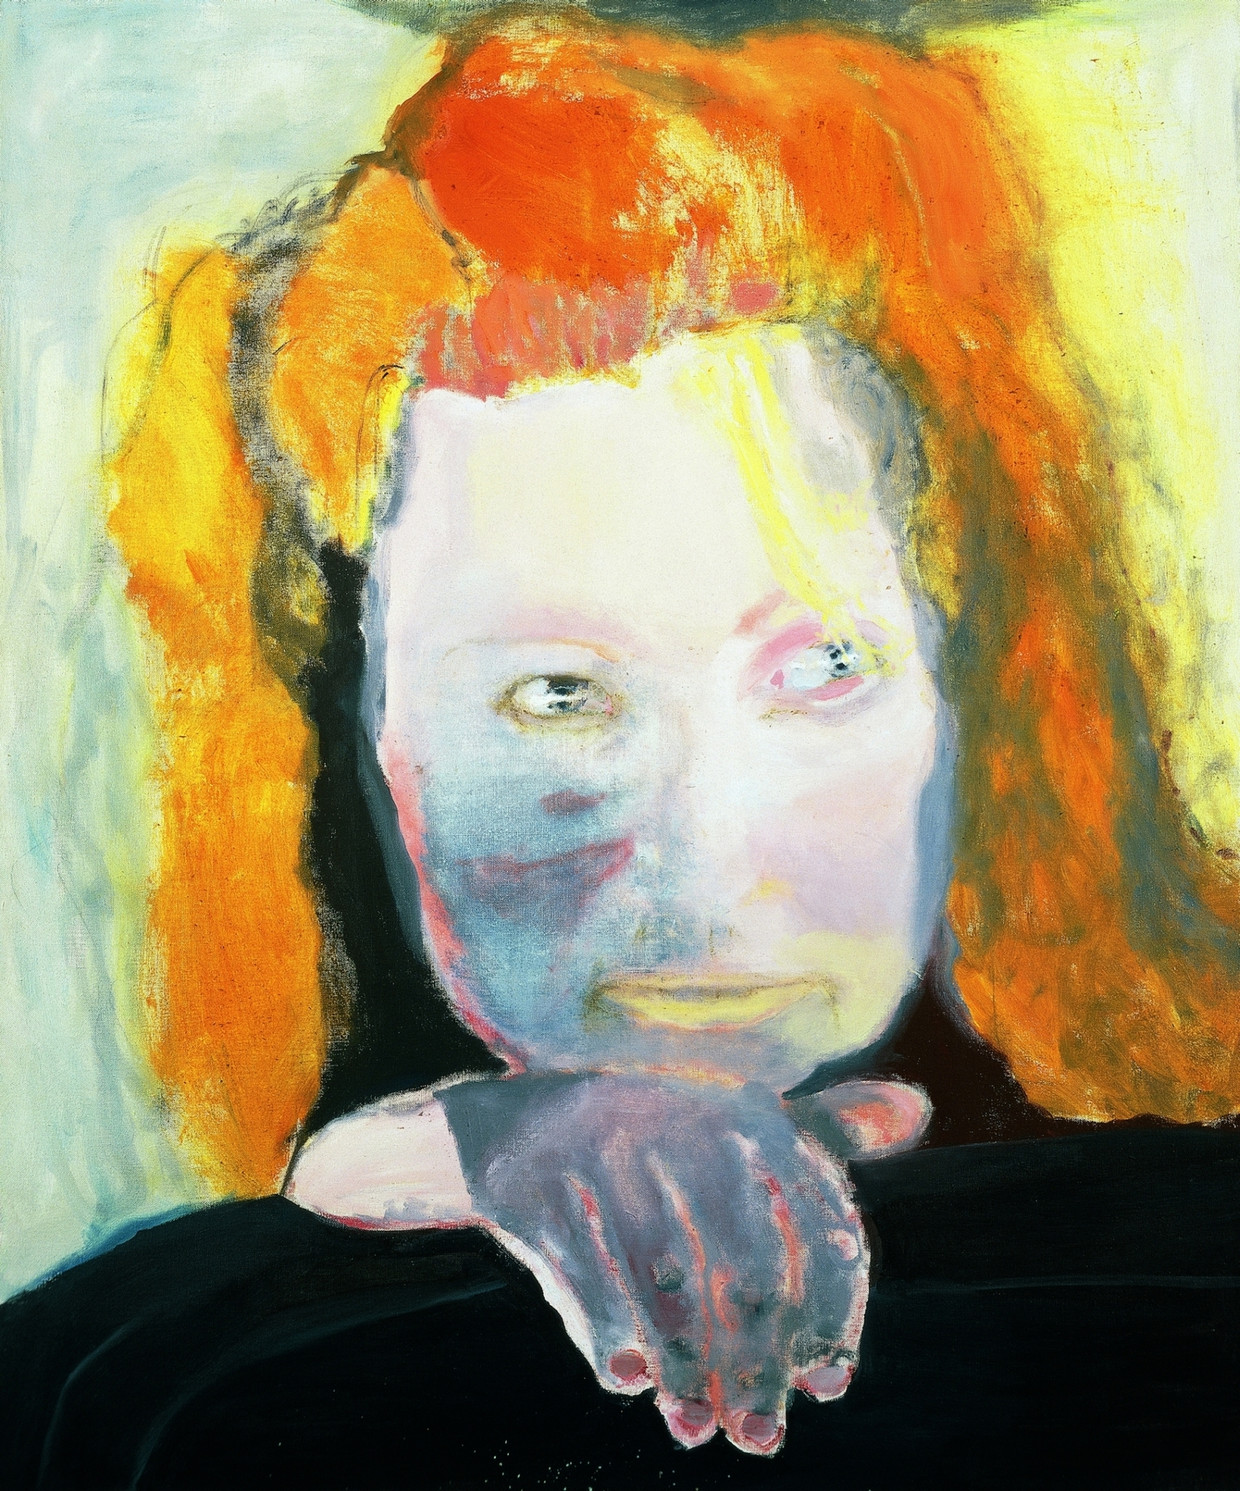 Ongebruikt Marlene Dumas: schilder met een beklemmende last | Trouw SL-38